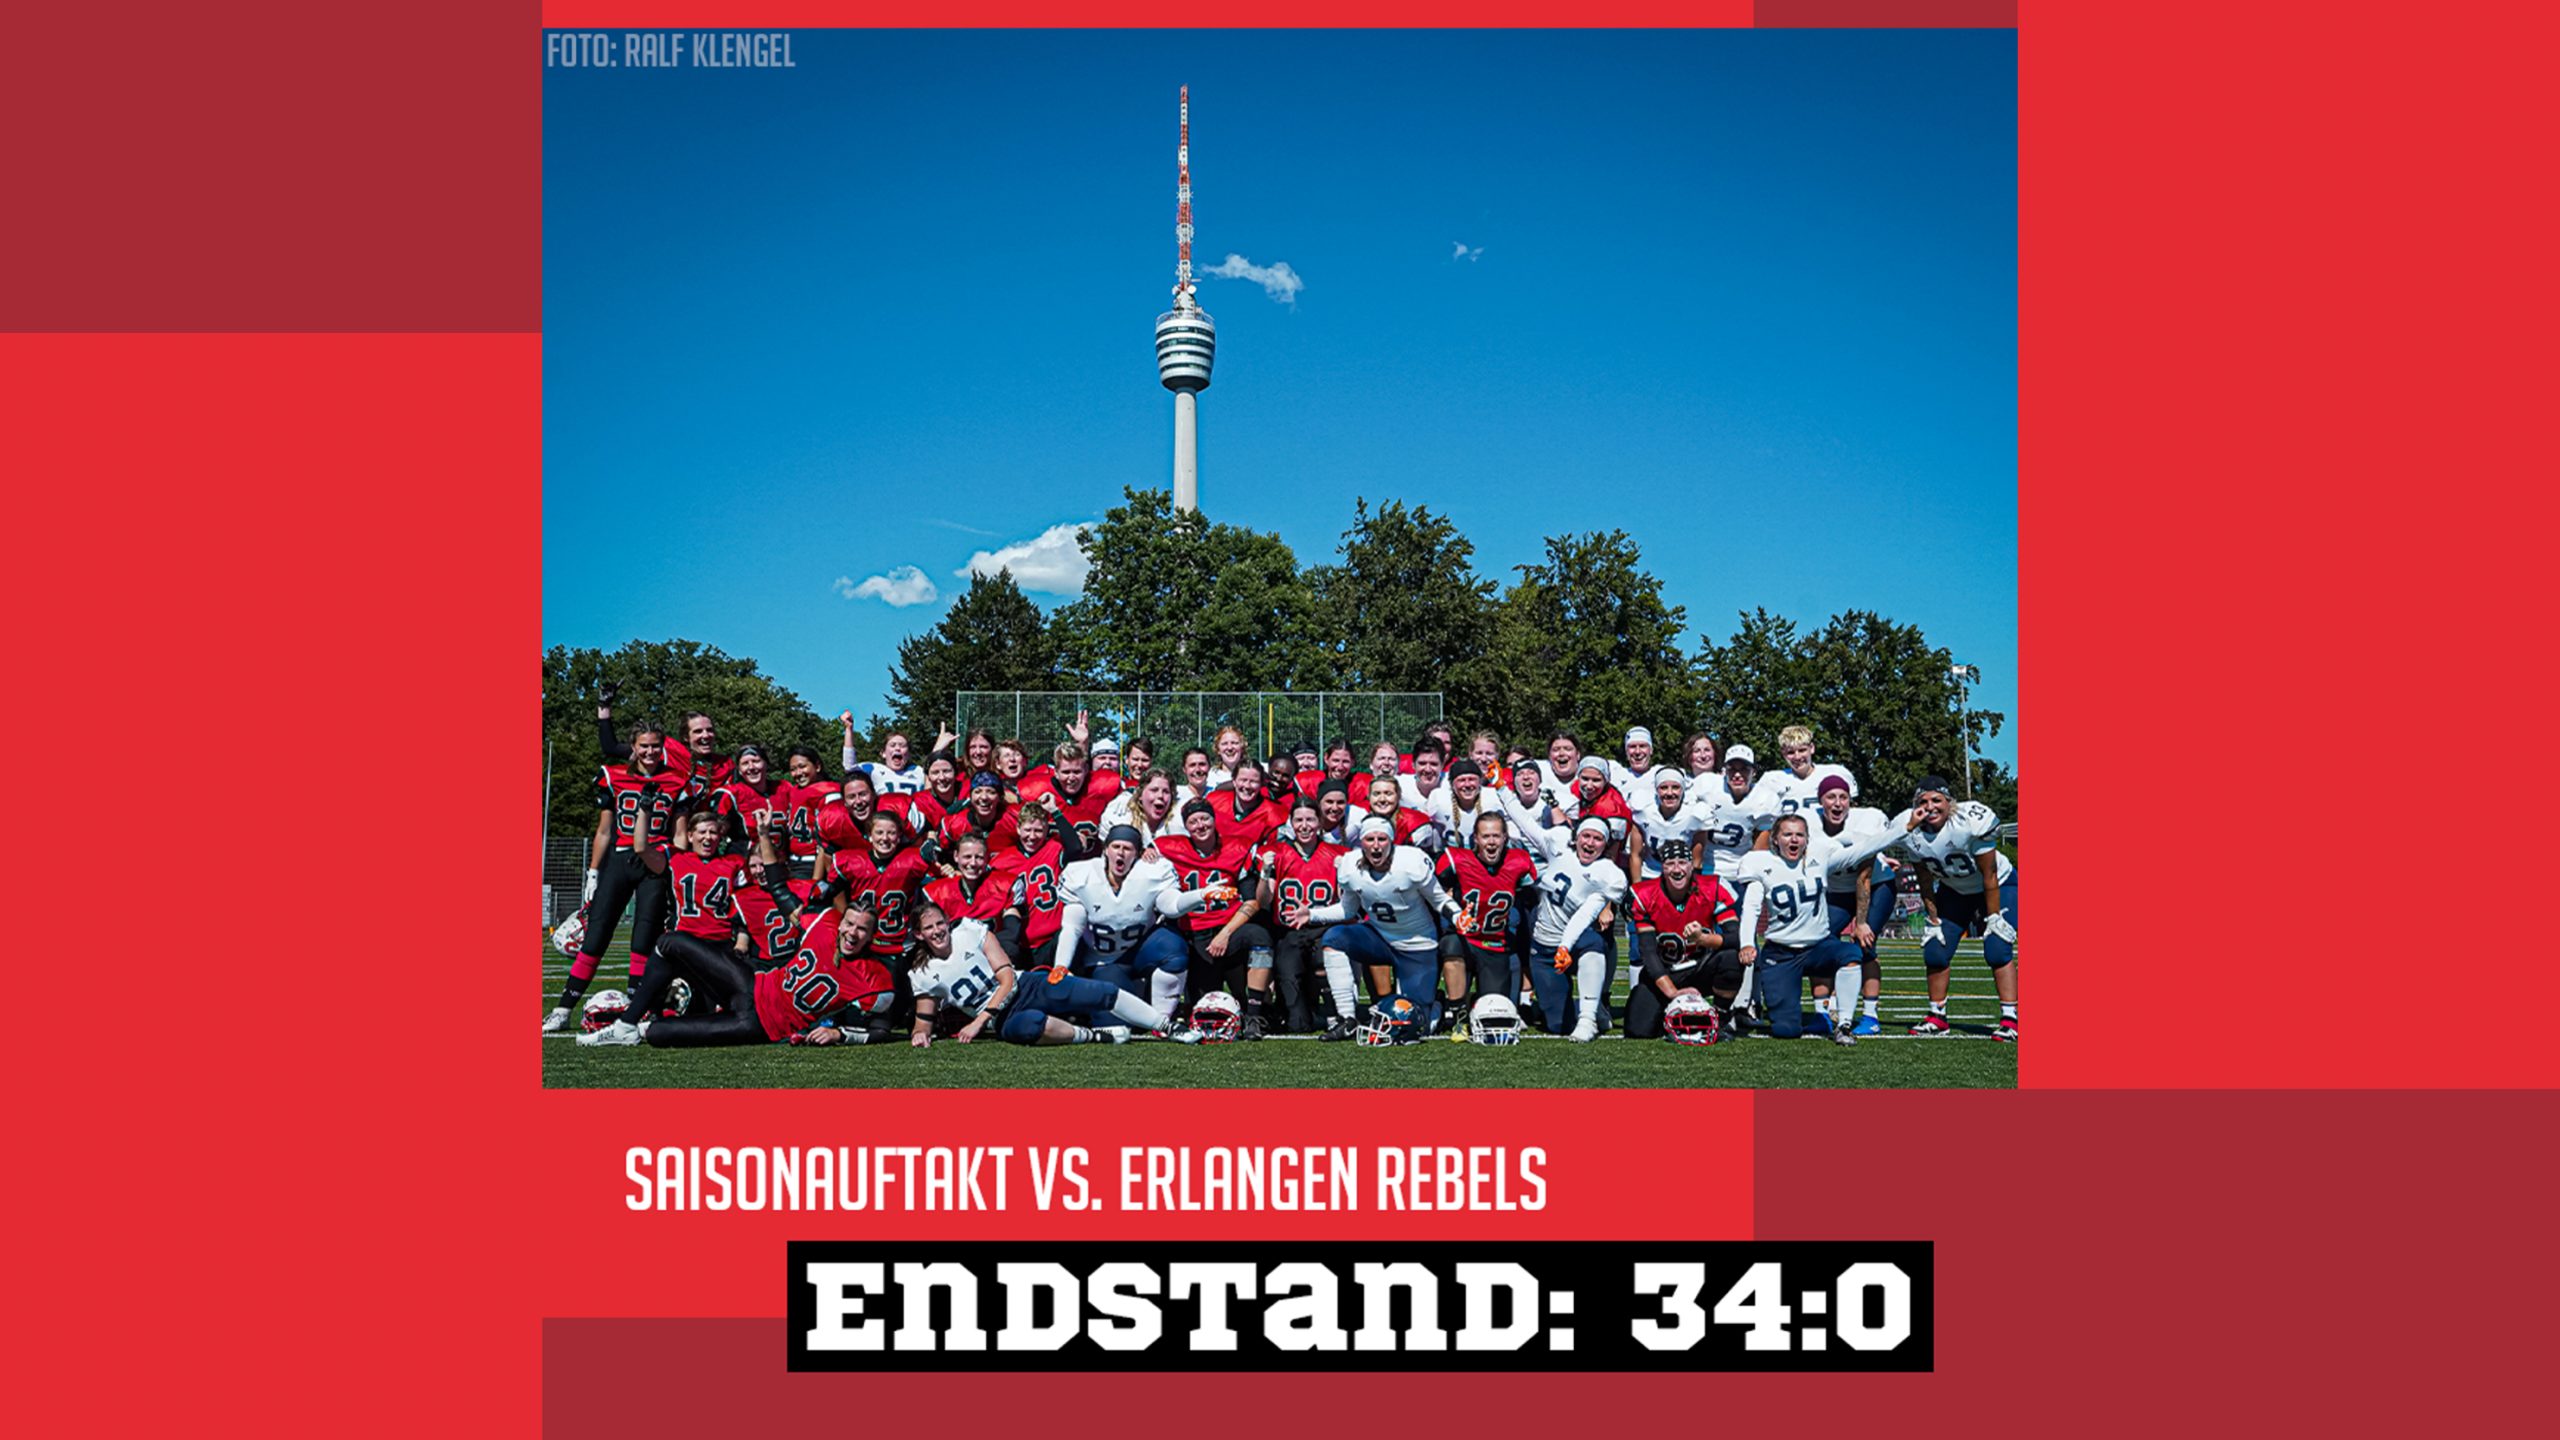 Artikelbild mit einem Gruppenfoto der Sisters und Rebels. Im Hintergrund ist der Stuttgarter Fernsehturm zu sehen. Auf dem Foto steht „Saisonauftakt vs. Erlangen Rebels“ und darunter „Endstand. 34:0“